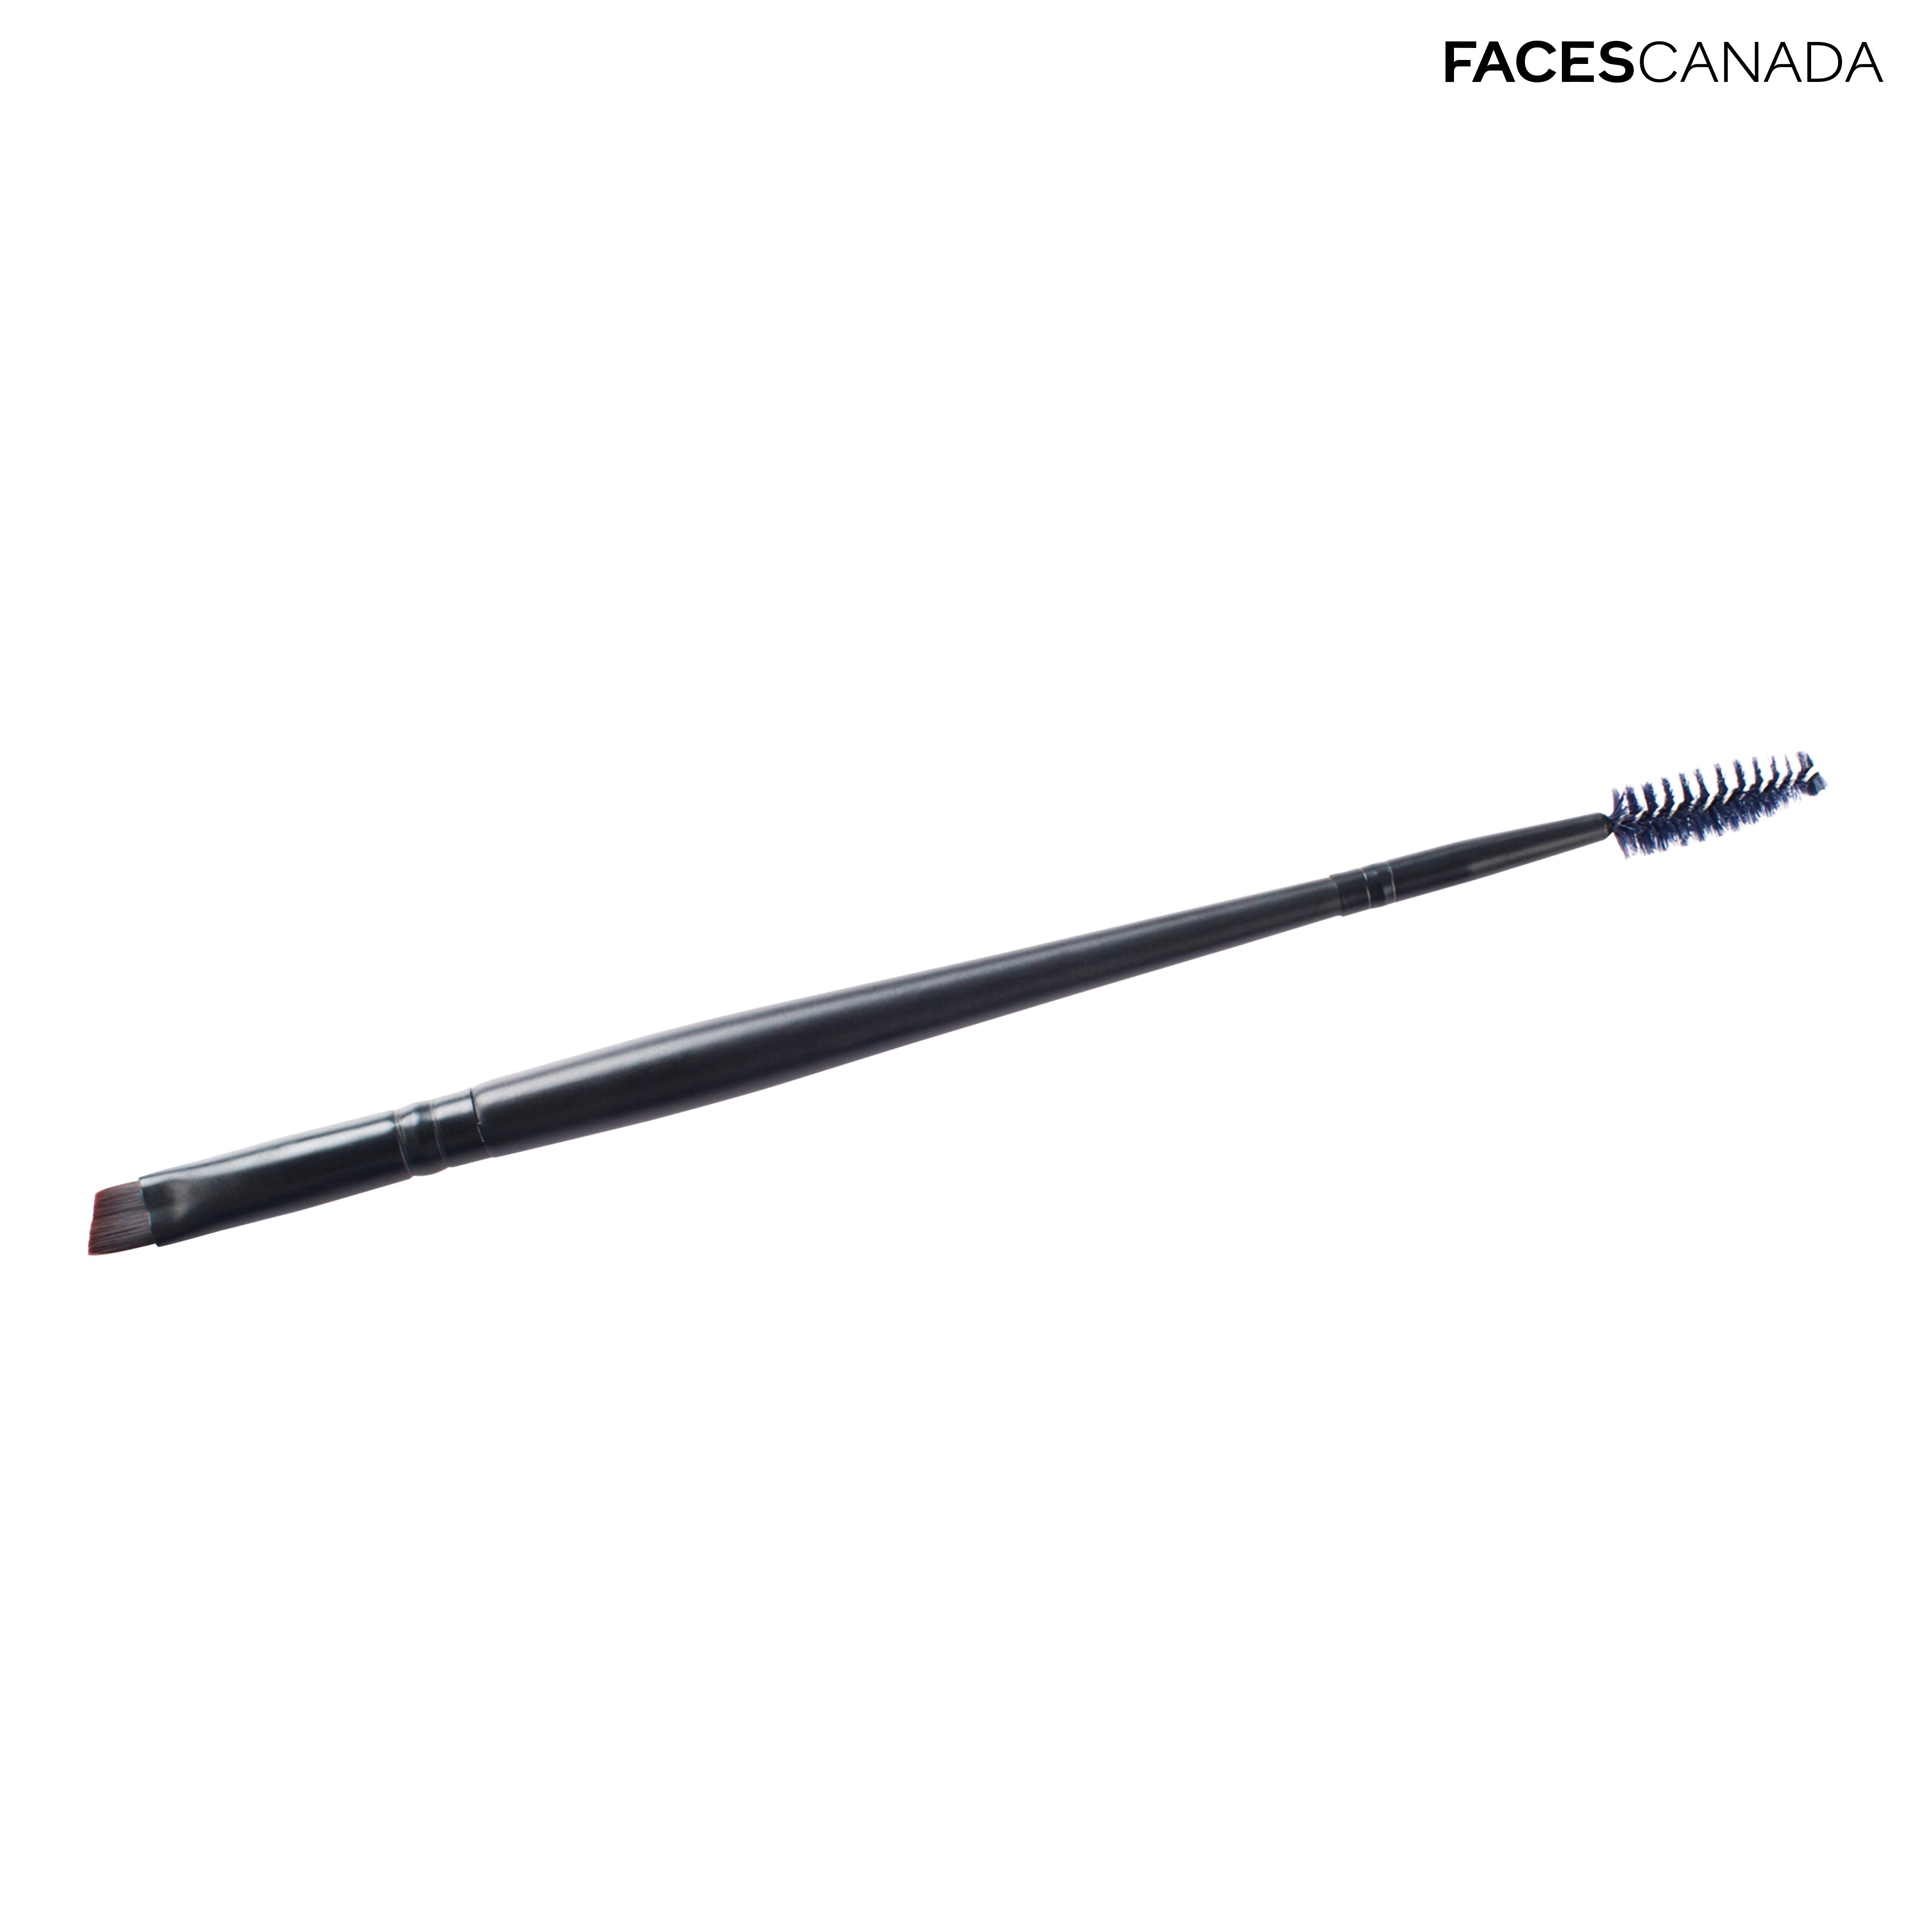 Faces Canada Mascara & Eye Brow Brush Faces Canada